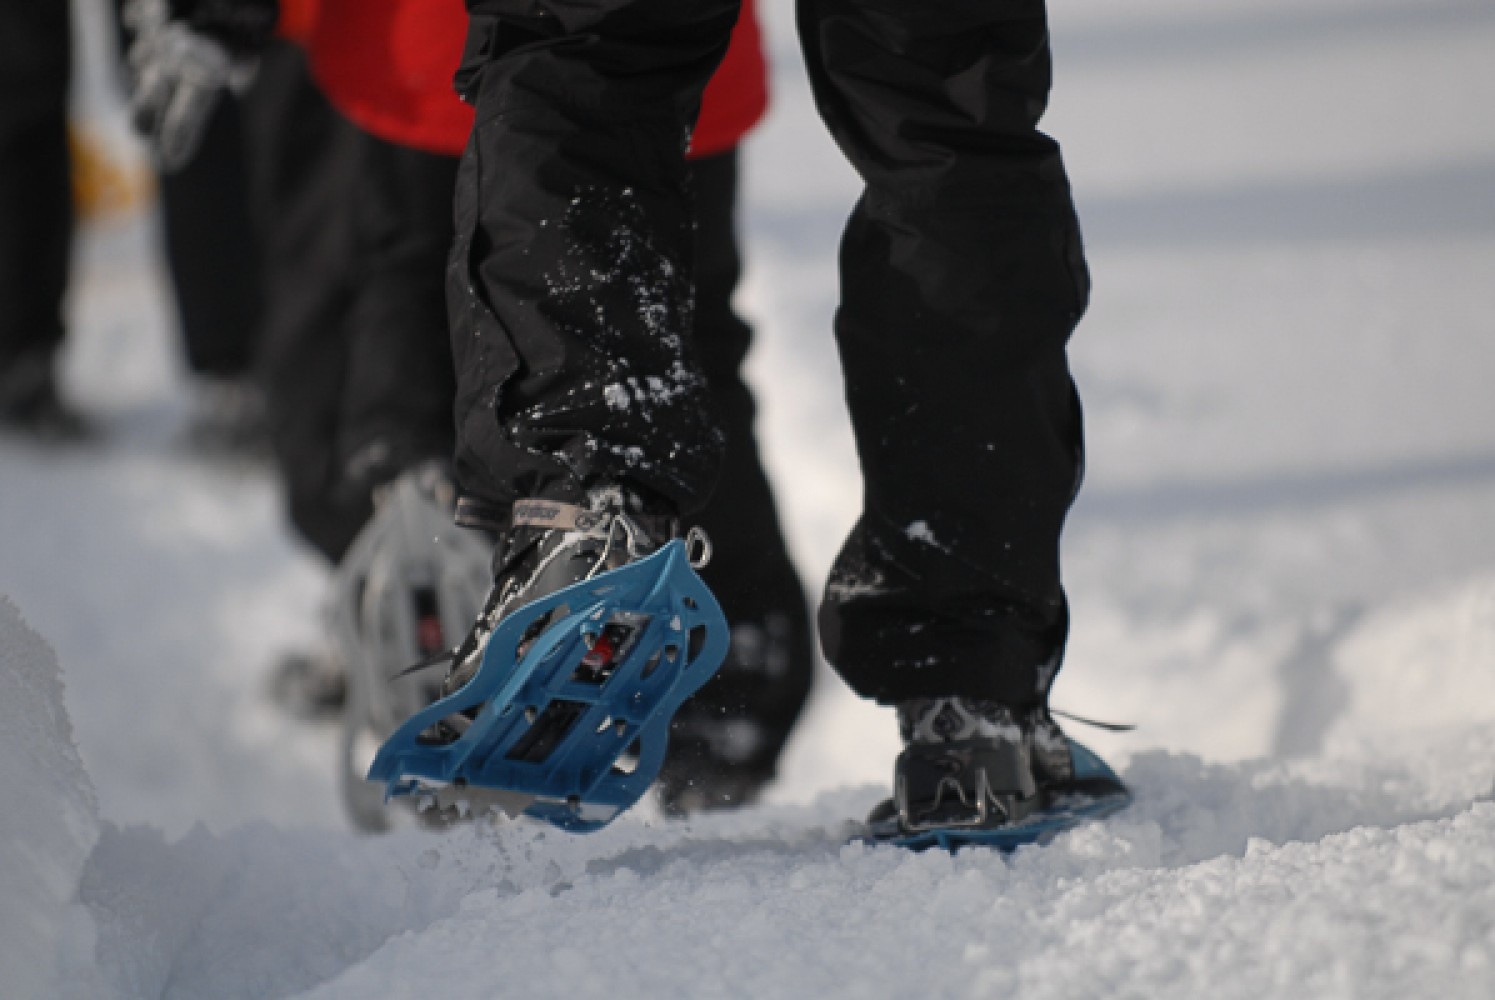 Caminatas en Raquetas de Nieve - Su Historia y Importancia